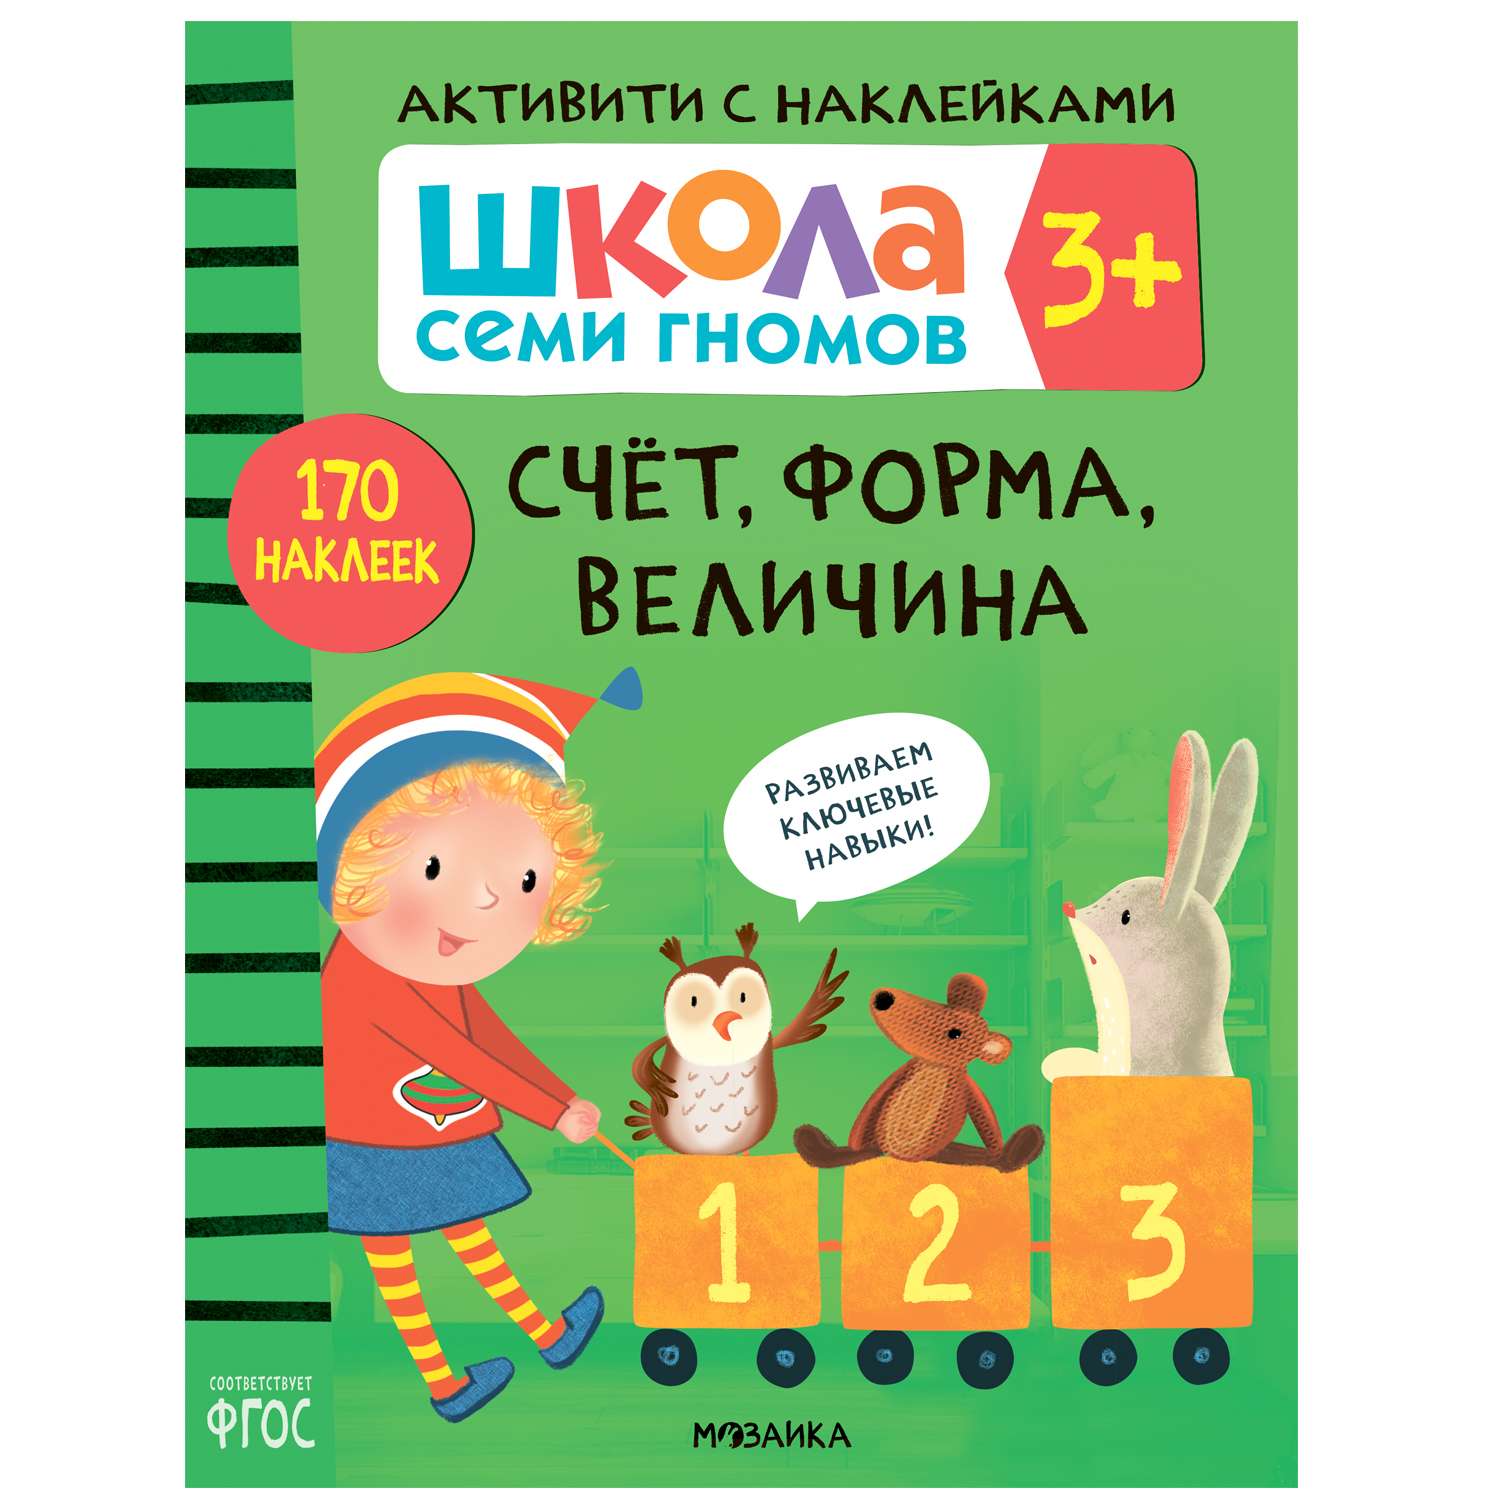 Книга МОЗАИКА kids Школа Семи Гномов Активити с наклейками Счет форма величина - фото 1